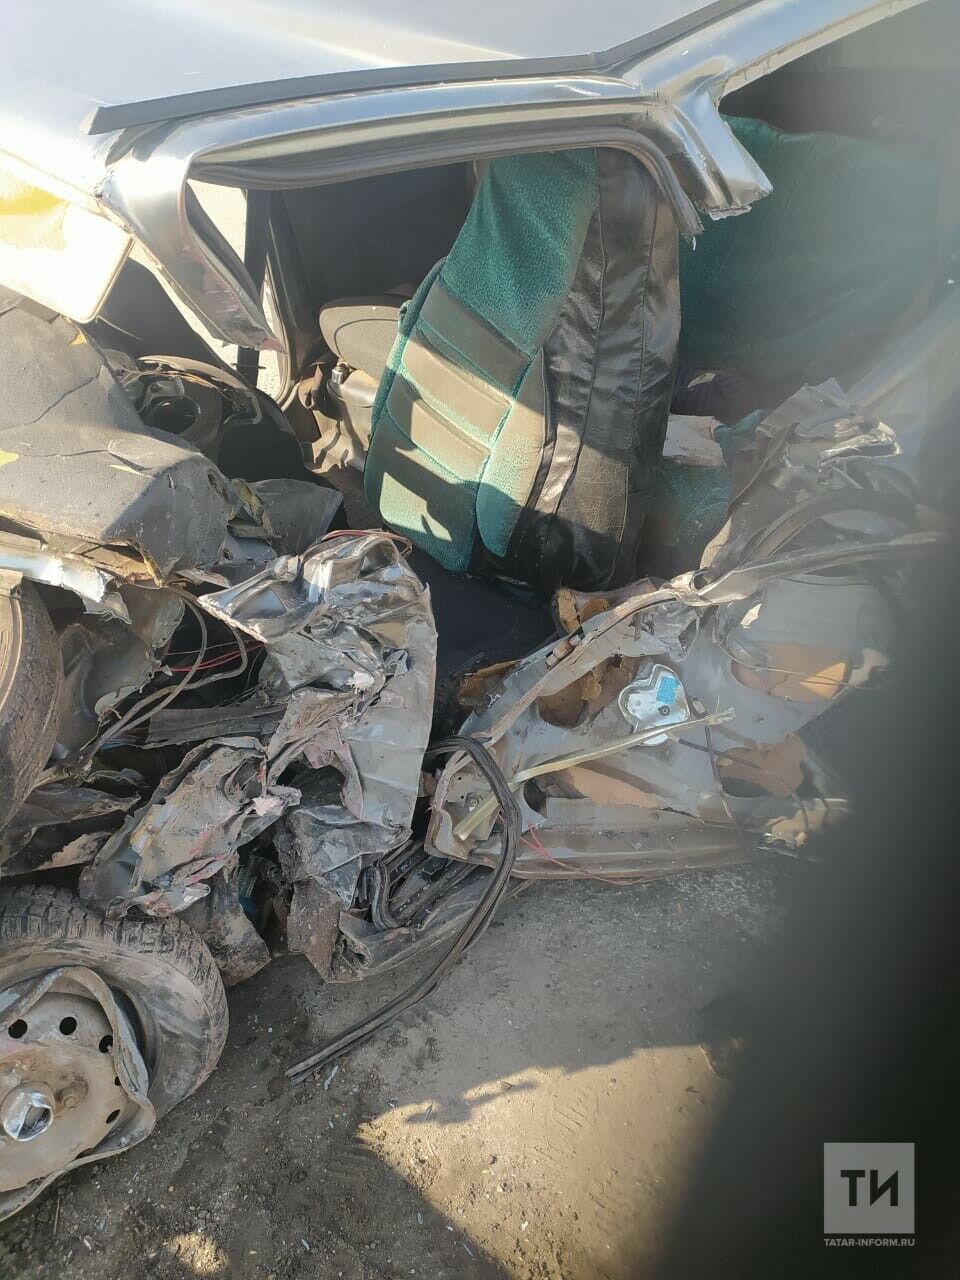 Несколько смертельных ДТП произошло на дорогах республики за последние 3 дня